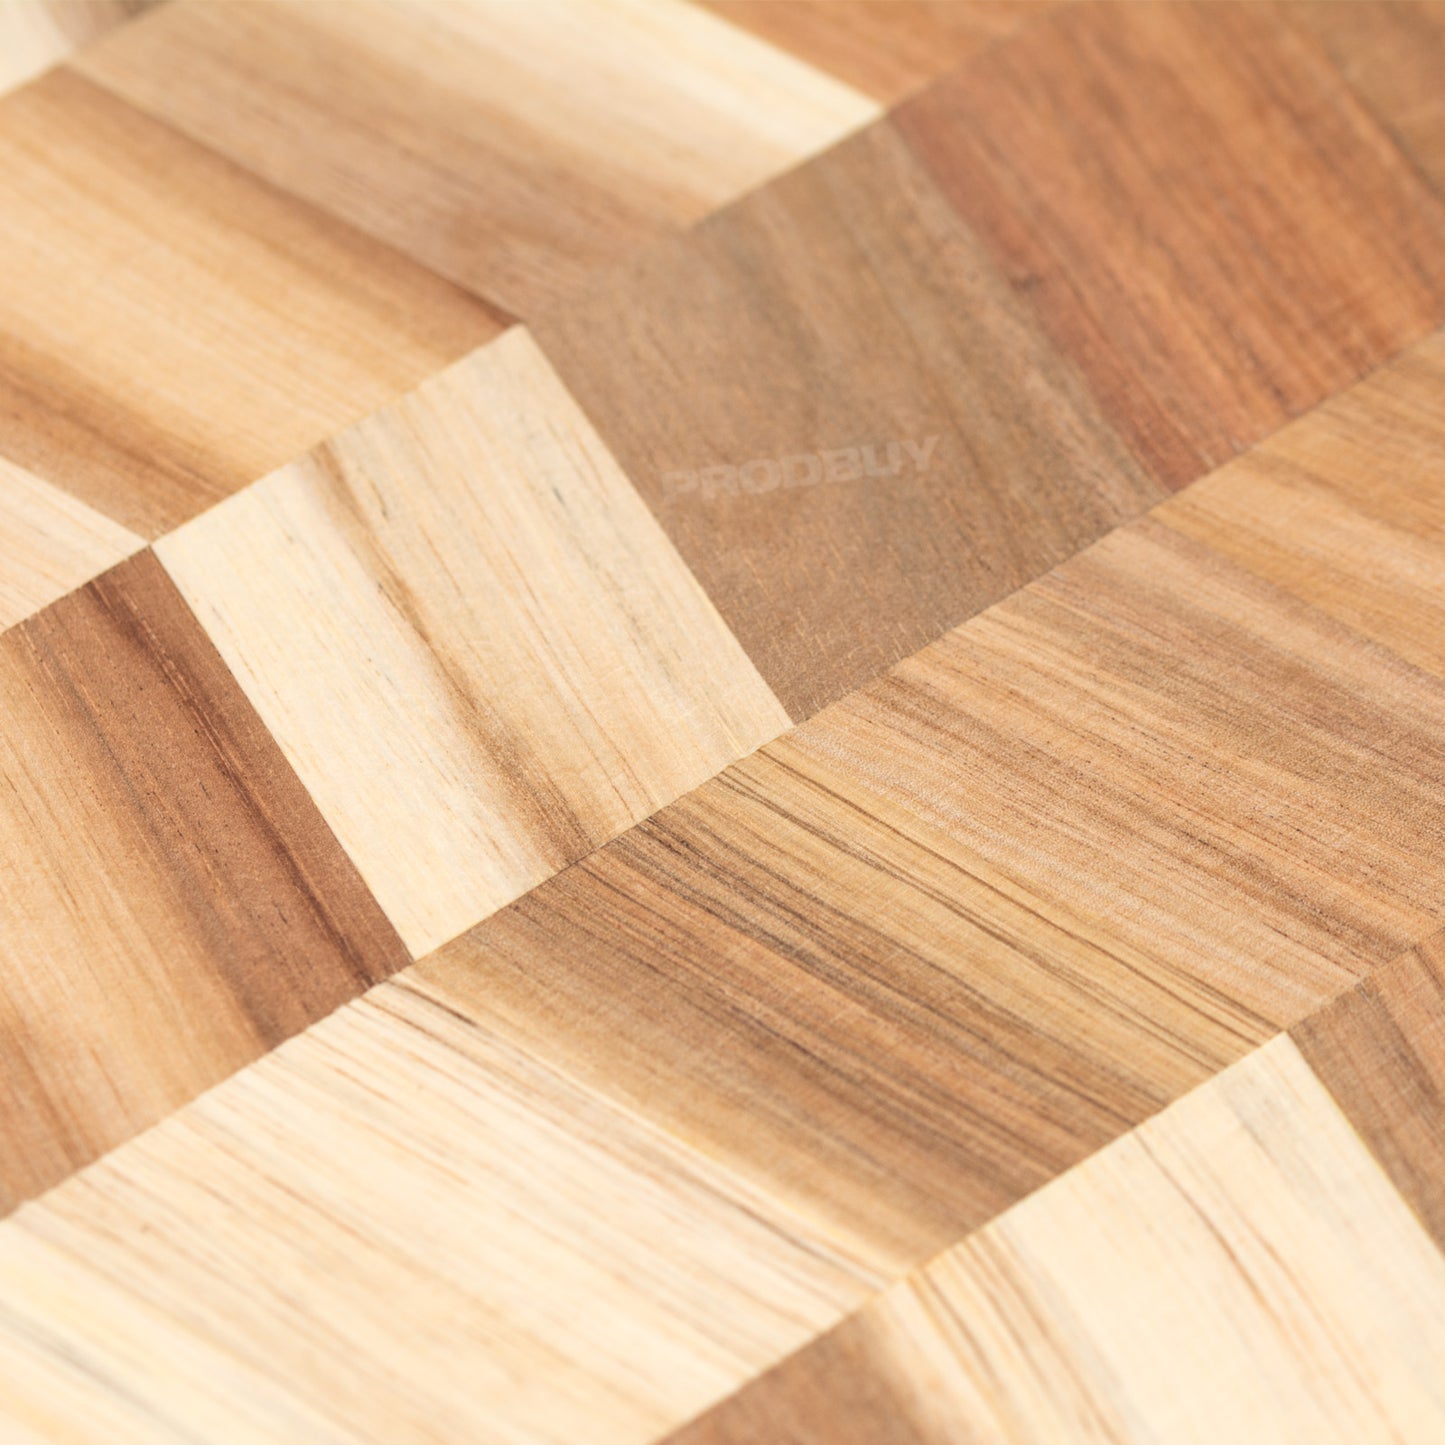 Rectangular 40cm Wooden Chopping Board